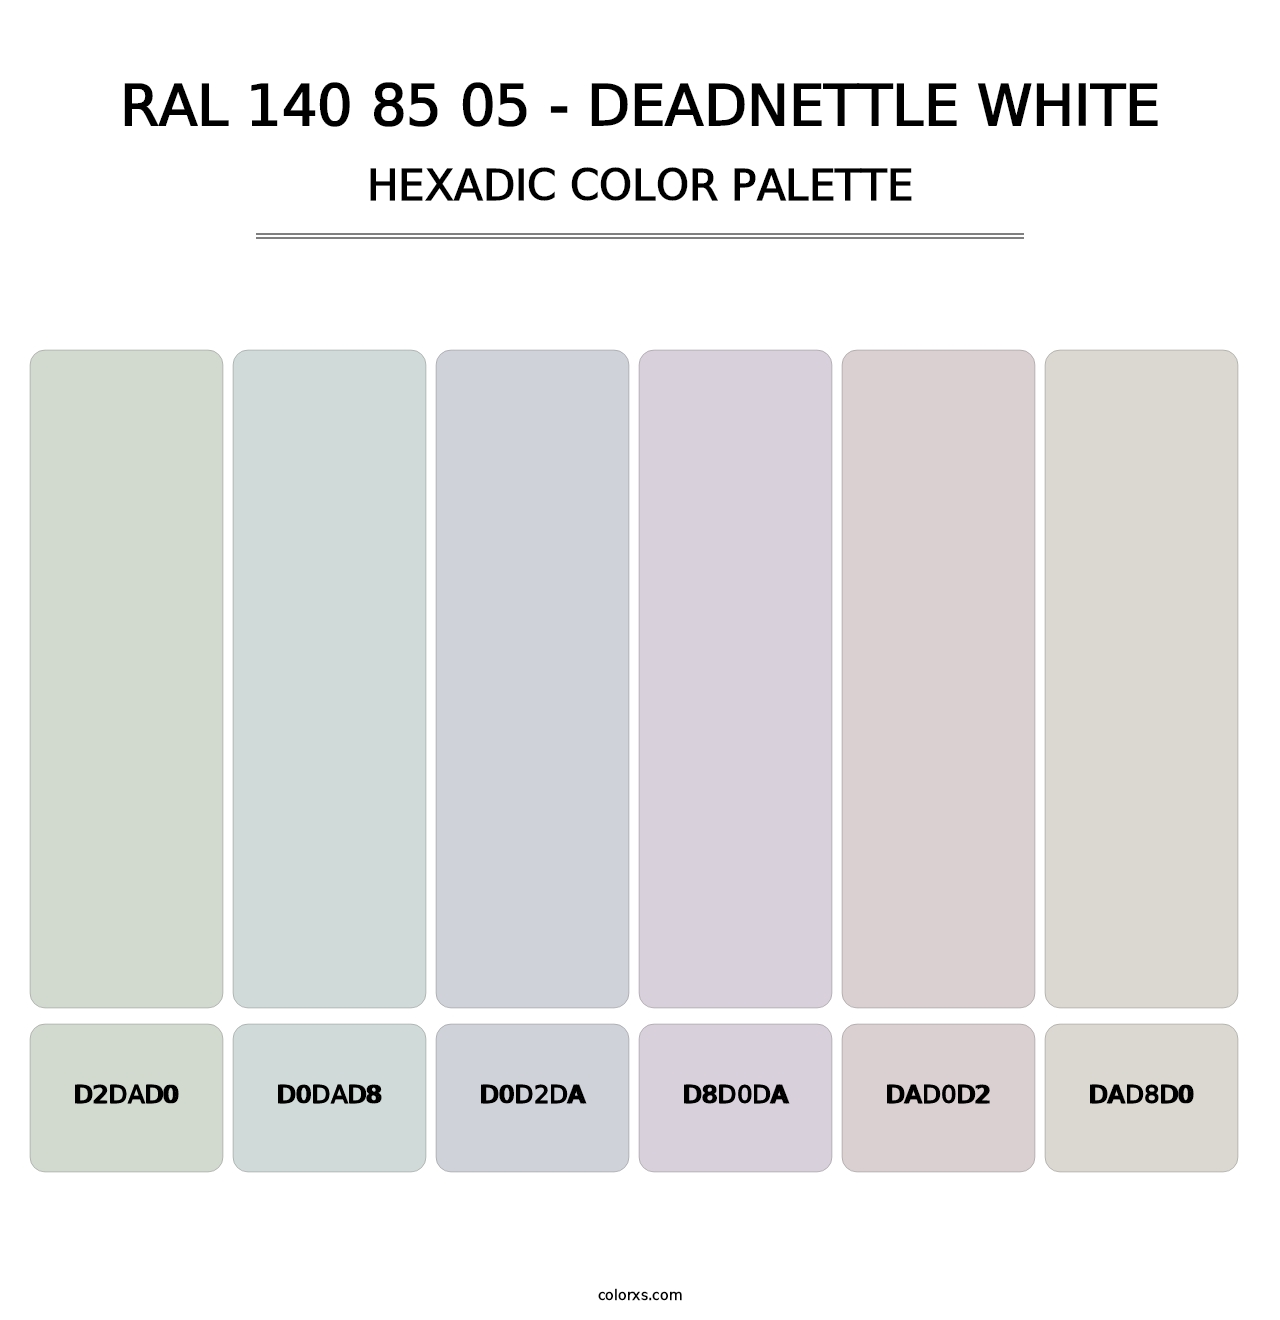 RAL 140 85 05 - Deadnettle White - Hexadic Color Palette